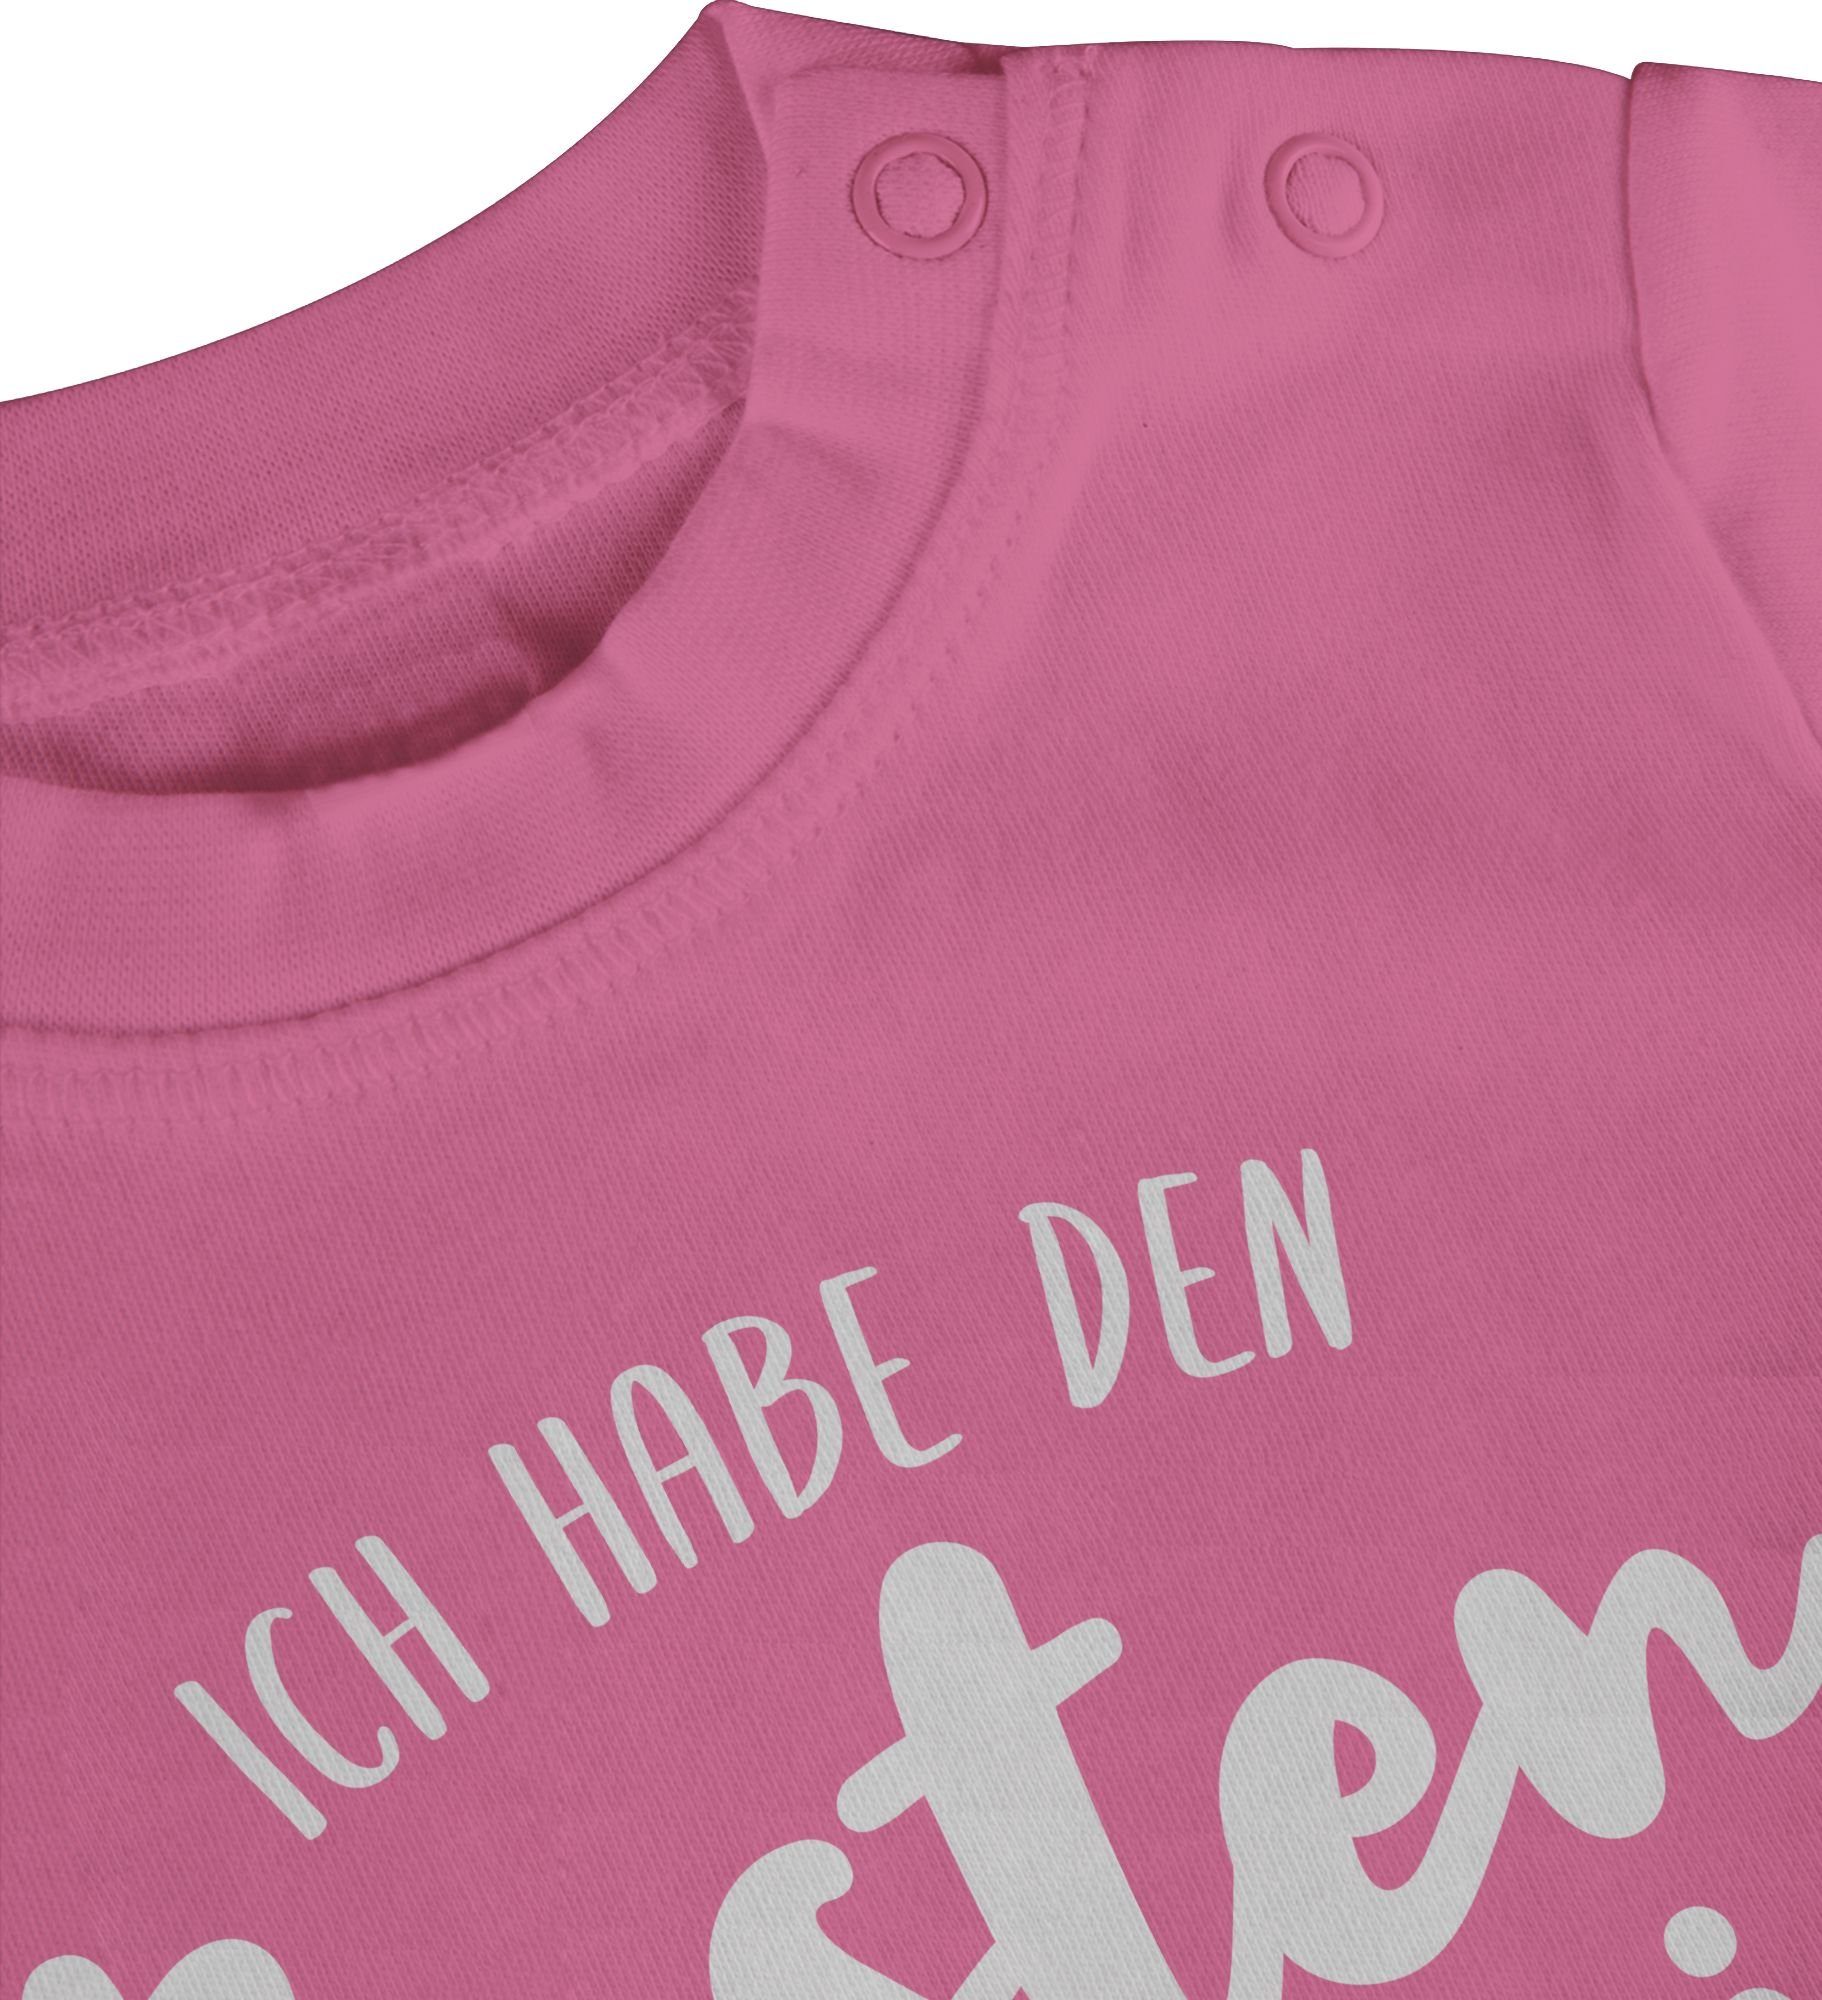 T-Shirt 3 Strampler & Papi Junge den Pink besten Ich Baby Welt der habe Shirtracer Mädchen